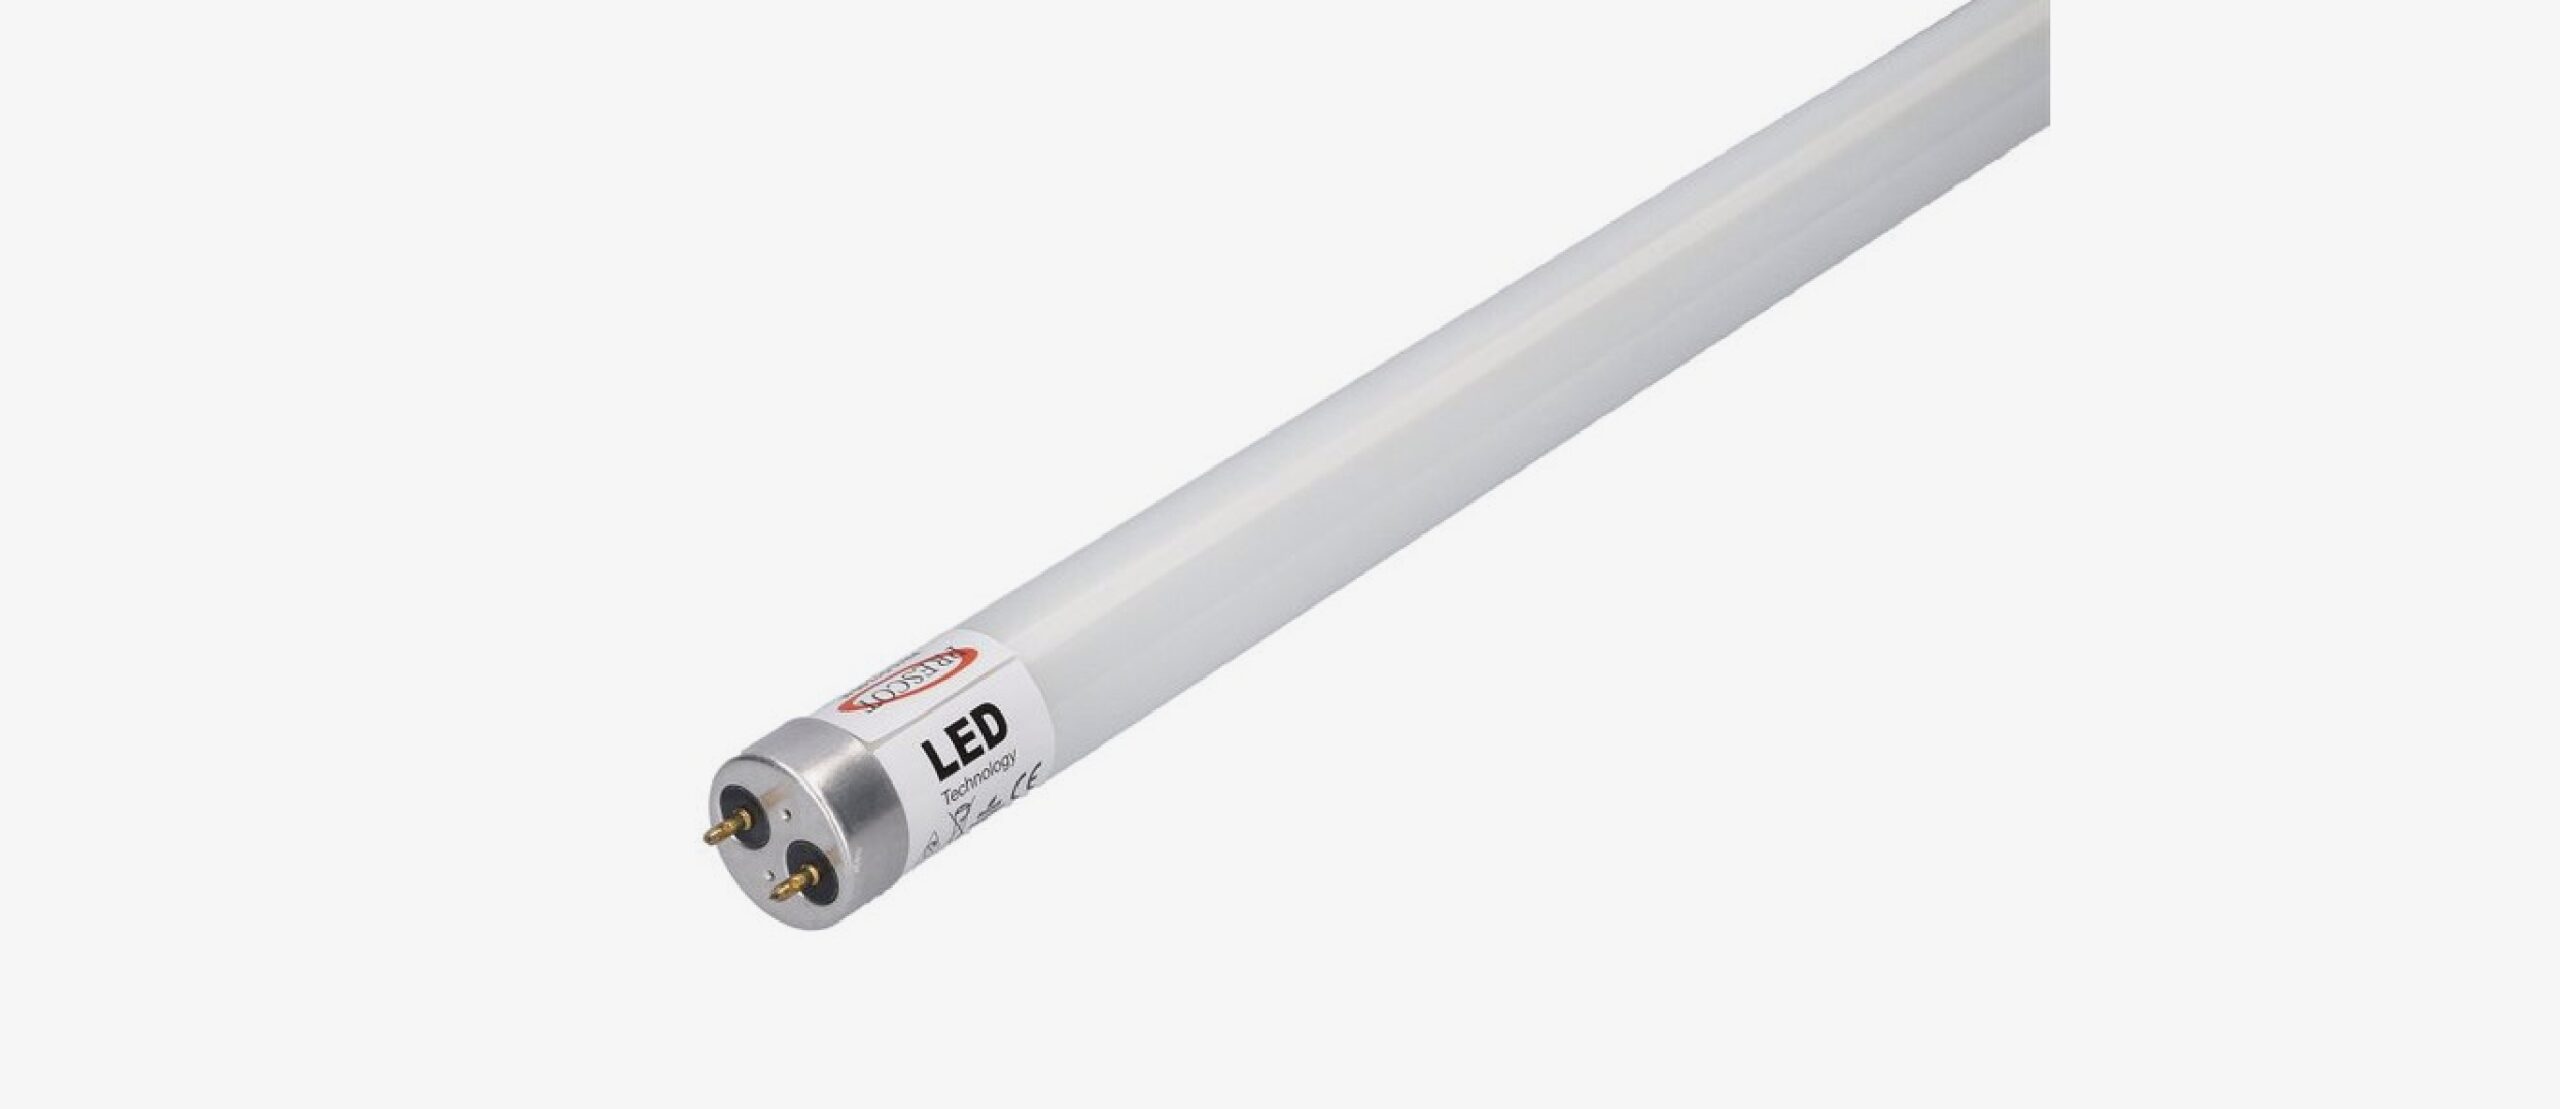 Standard-LED-Leuchtstofflampen